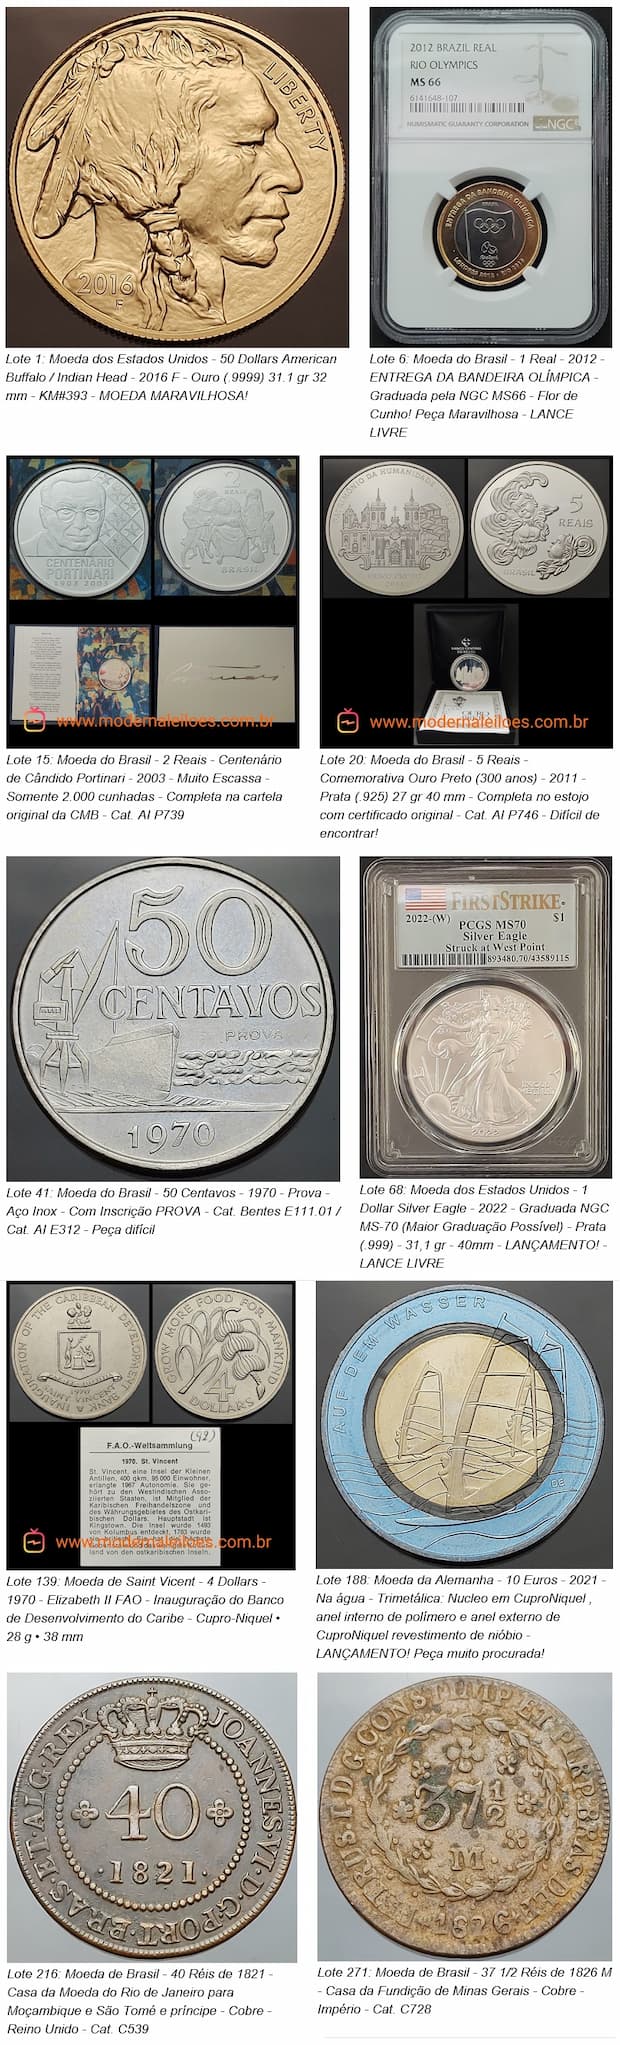 Δημοπρασίες Flávia Cardoso Soares: 50º Σύγχρονη Νομισματική Δημοπρασία - 31-05 στις 7 μ.μ., κυριότερα σημεία. Αποκάλυψη.